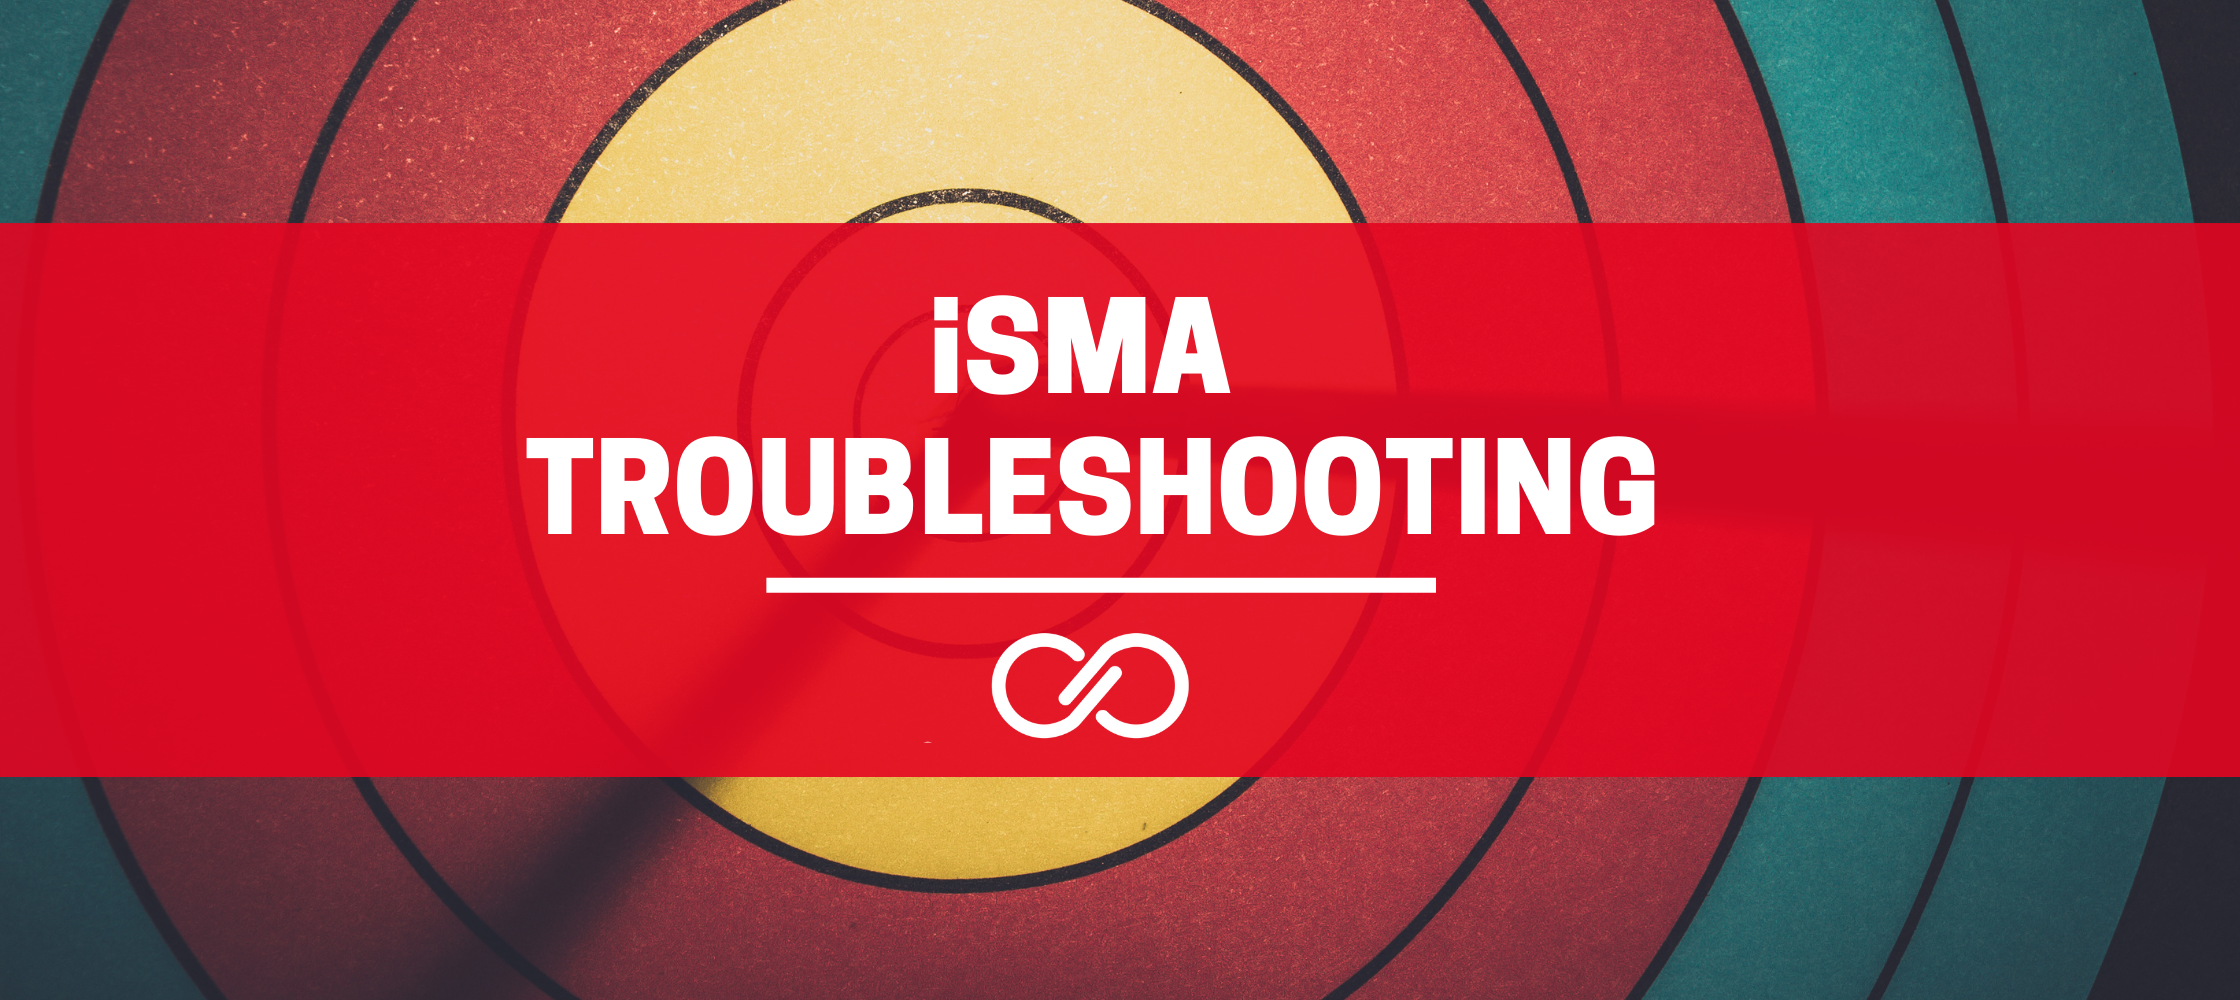 iSMA TROUBLESHOOTING